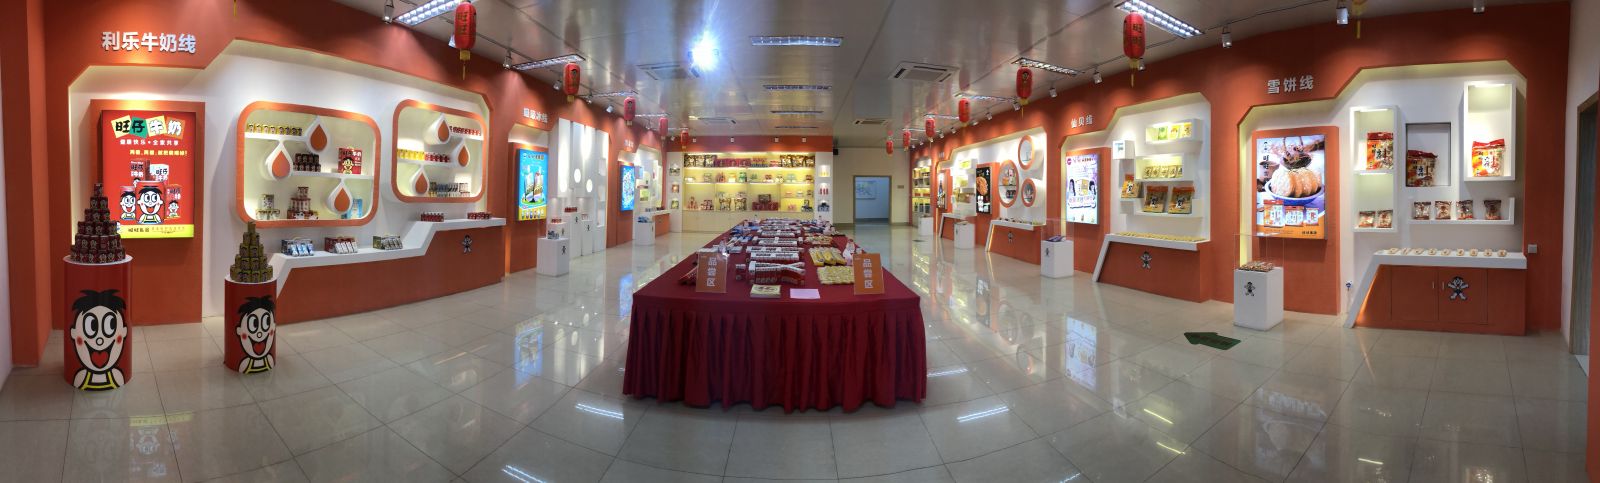 旺旺集團廣西總廠產品展示廳。